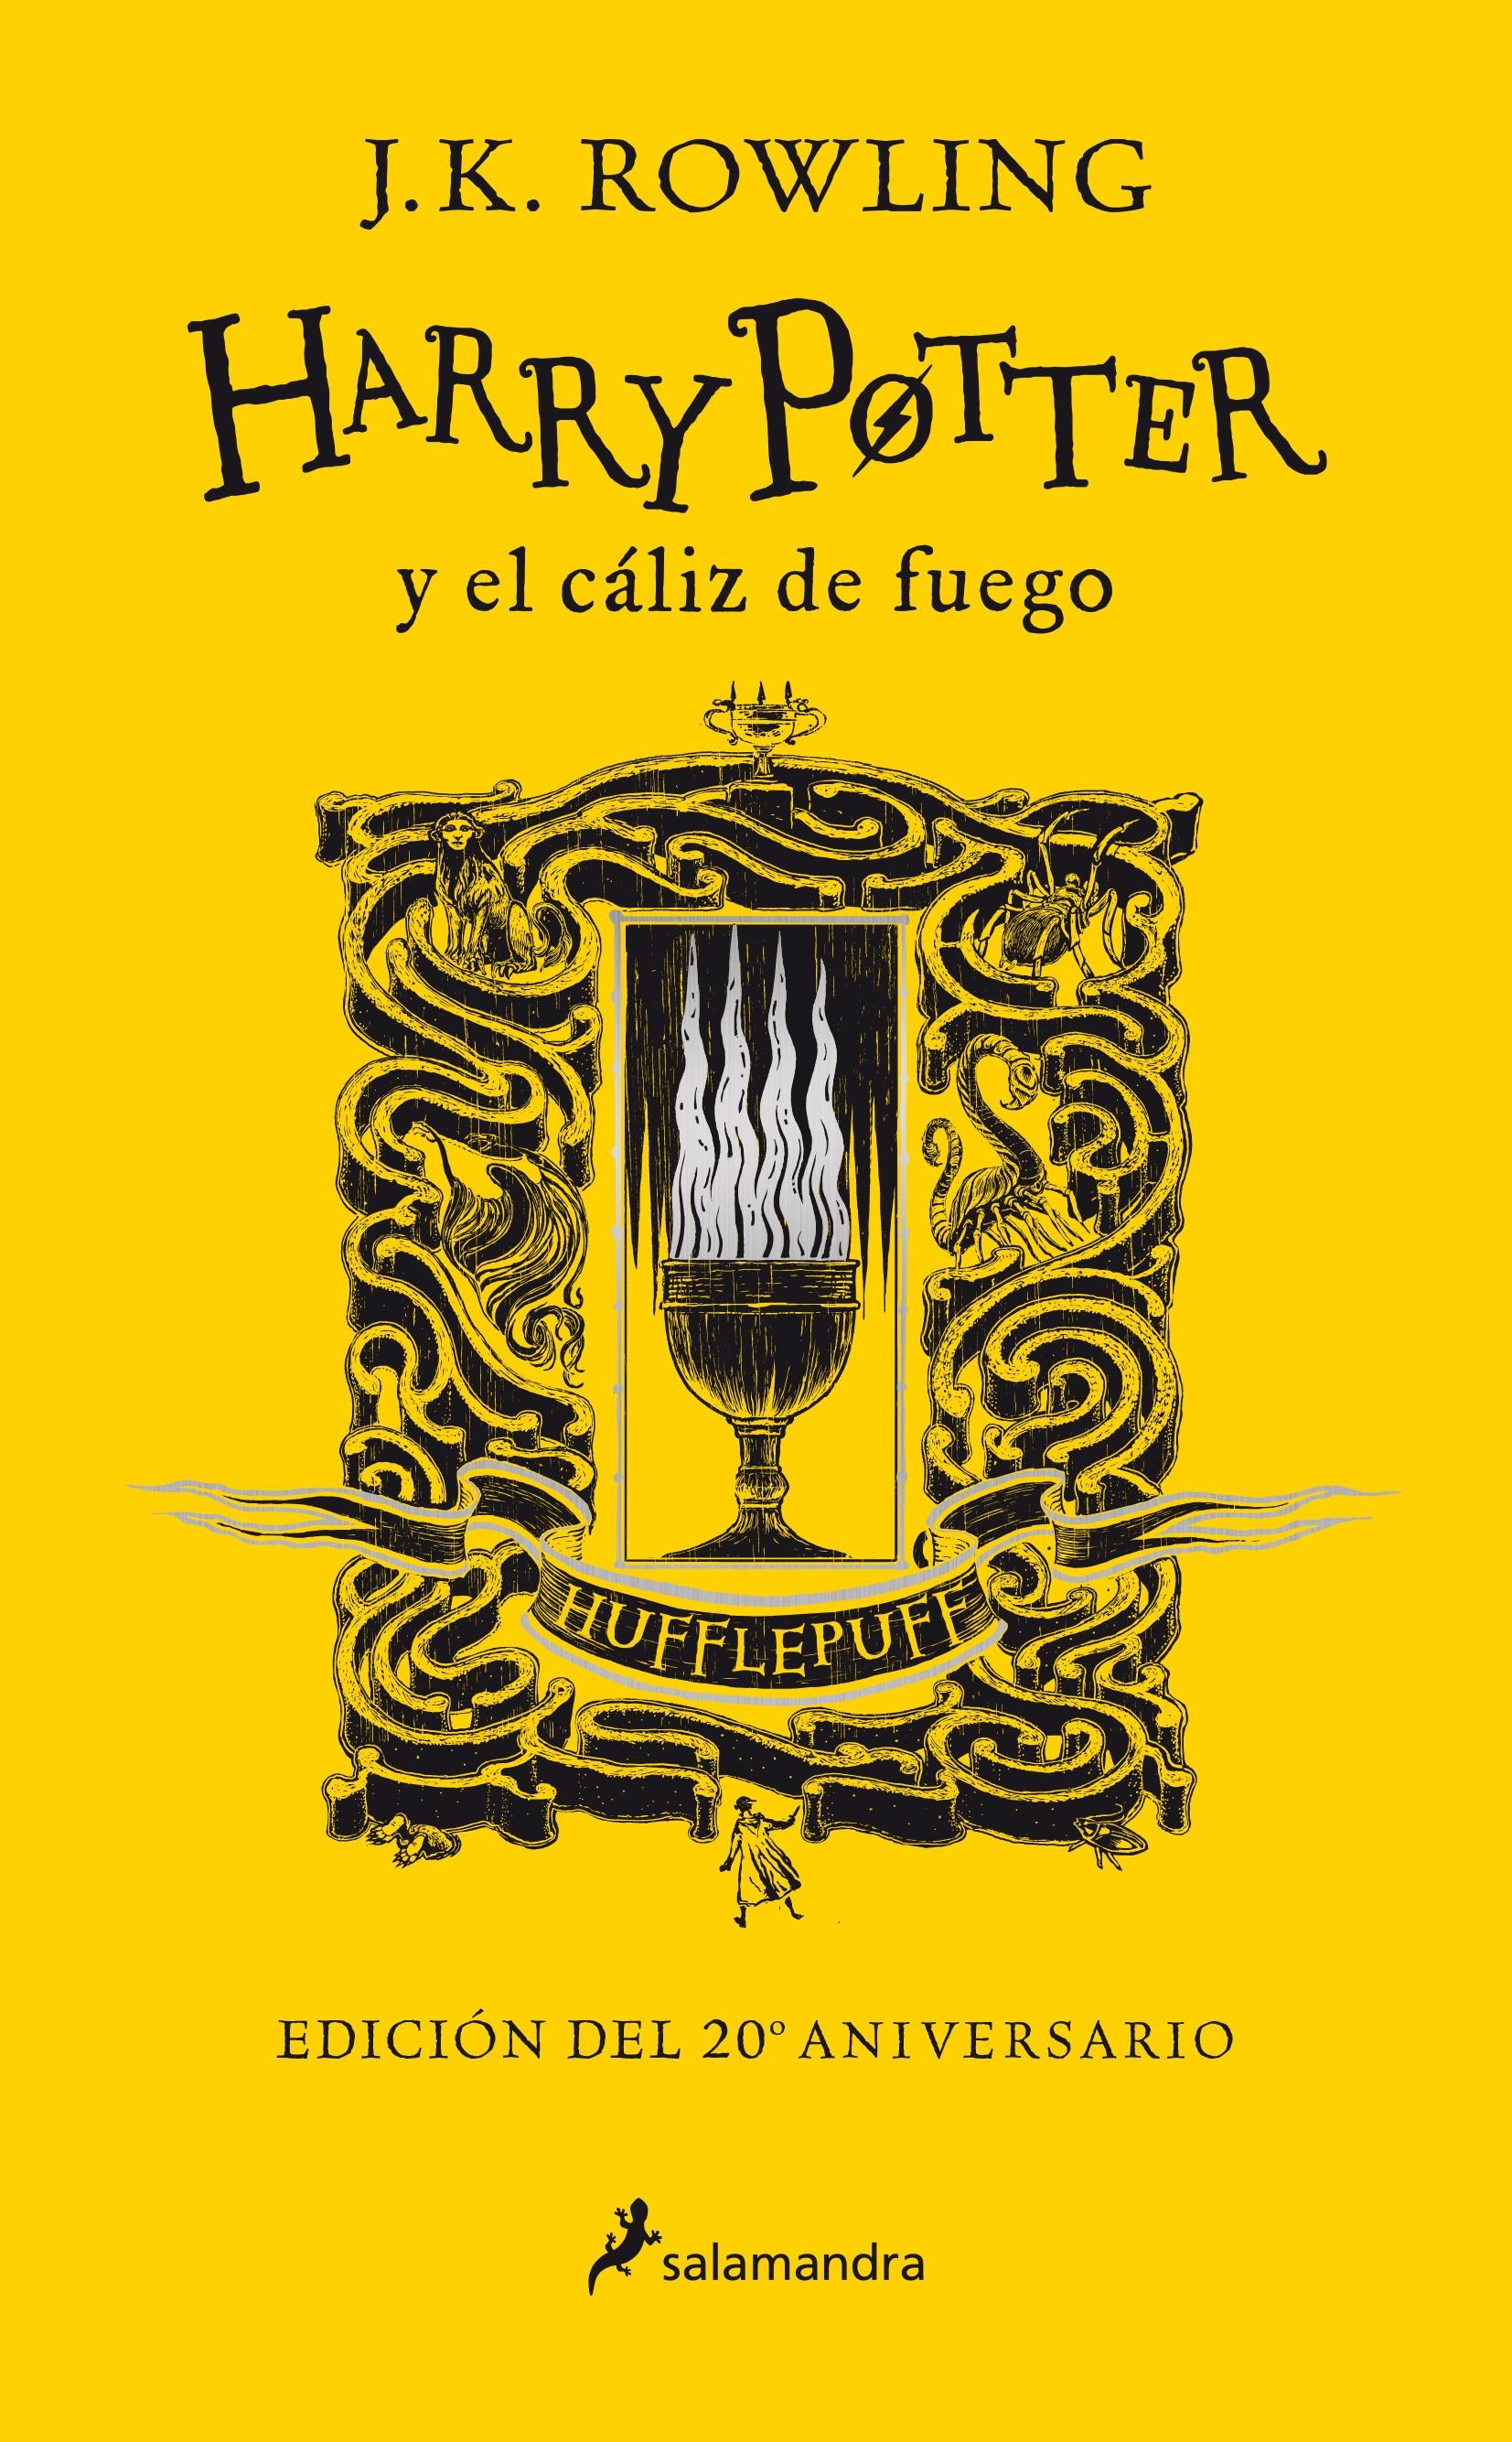 Harry Potter y el cáliz de fuego: Hufflepuff (Harry Potter - 4) "Entrega - Paciencia - Lealtad (Edición del 20 Aniversario)". 